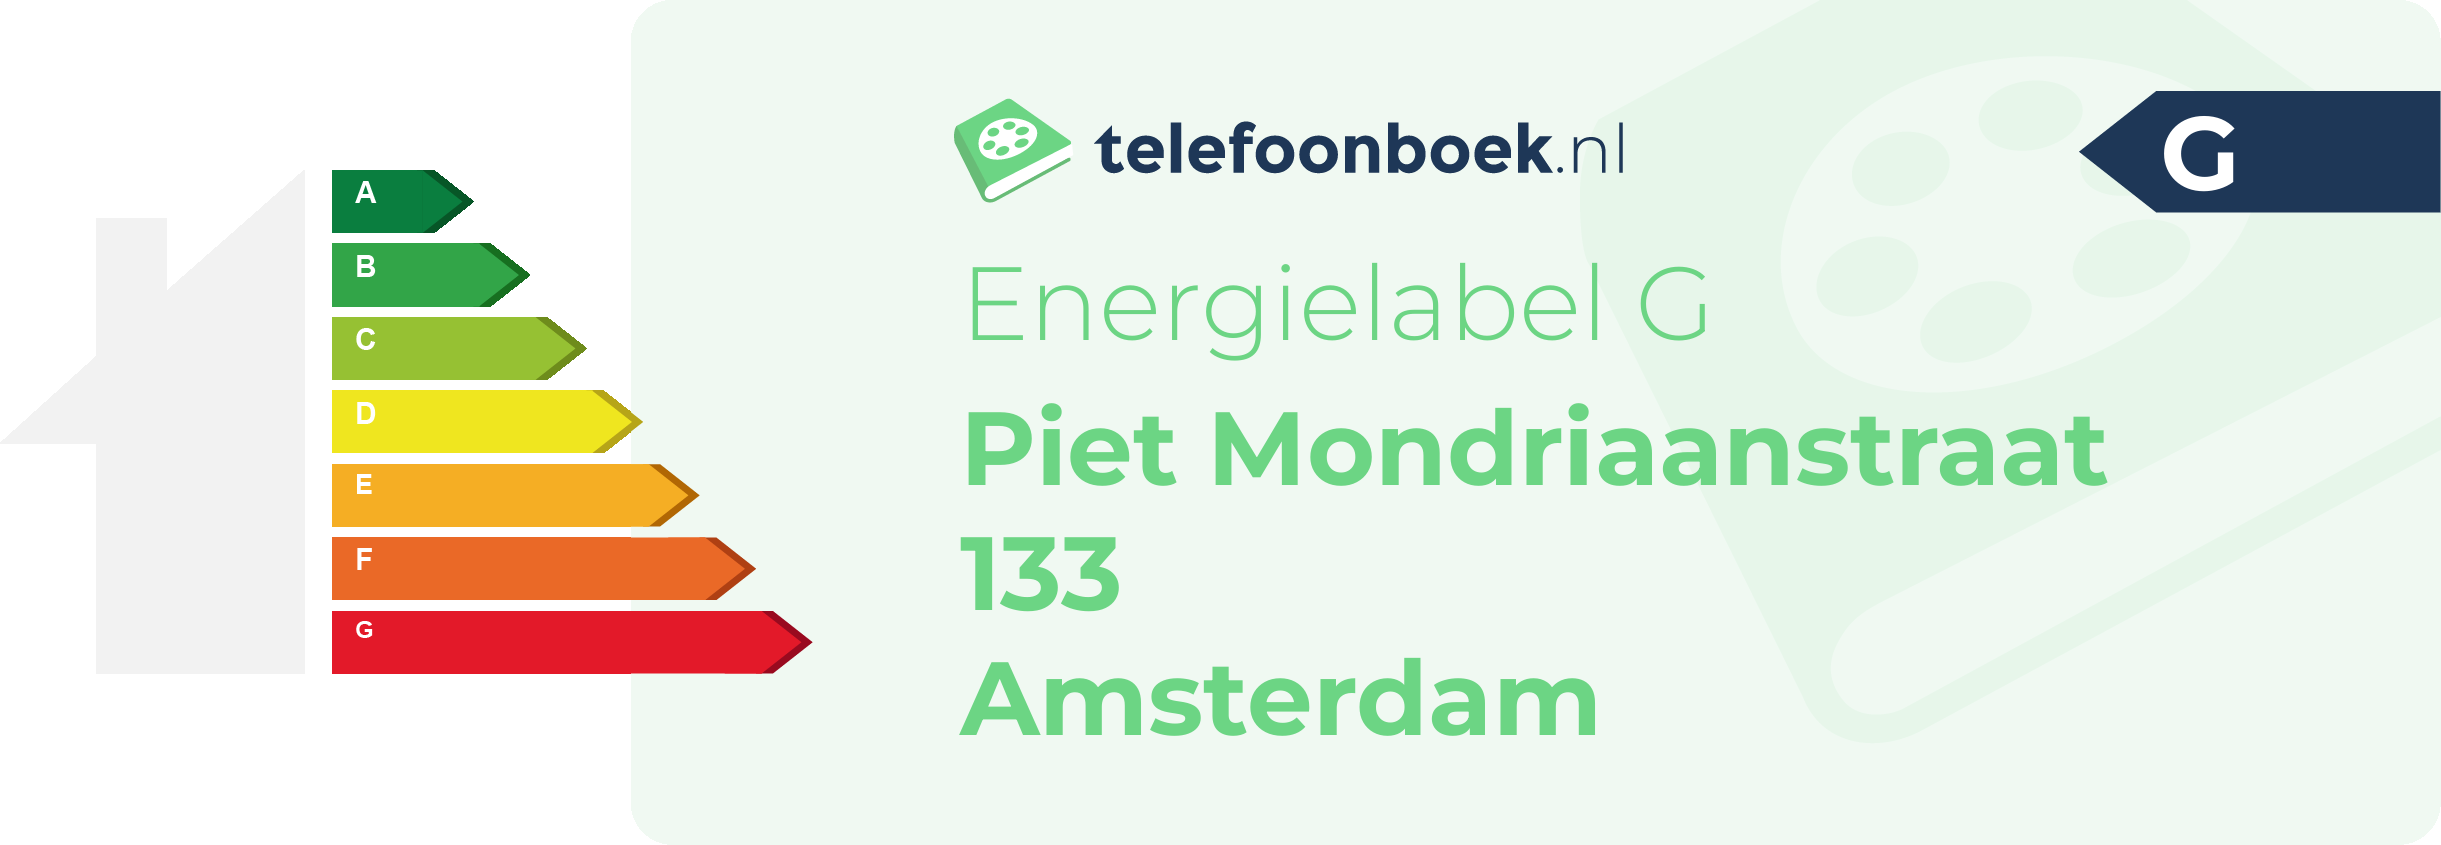 Energielabel Piet Mondriaanstraat 133 Amsterdam